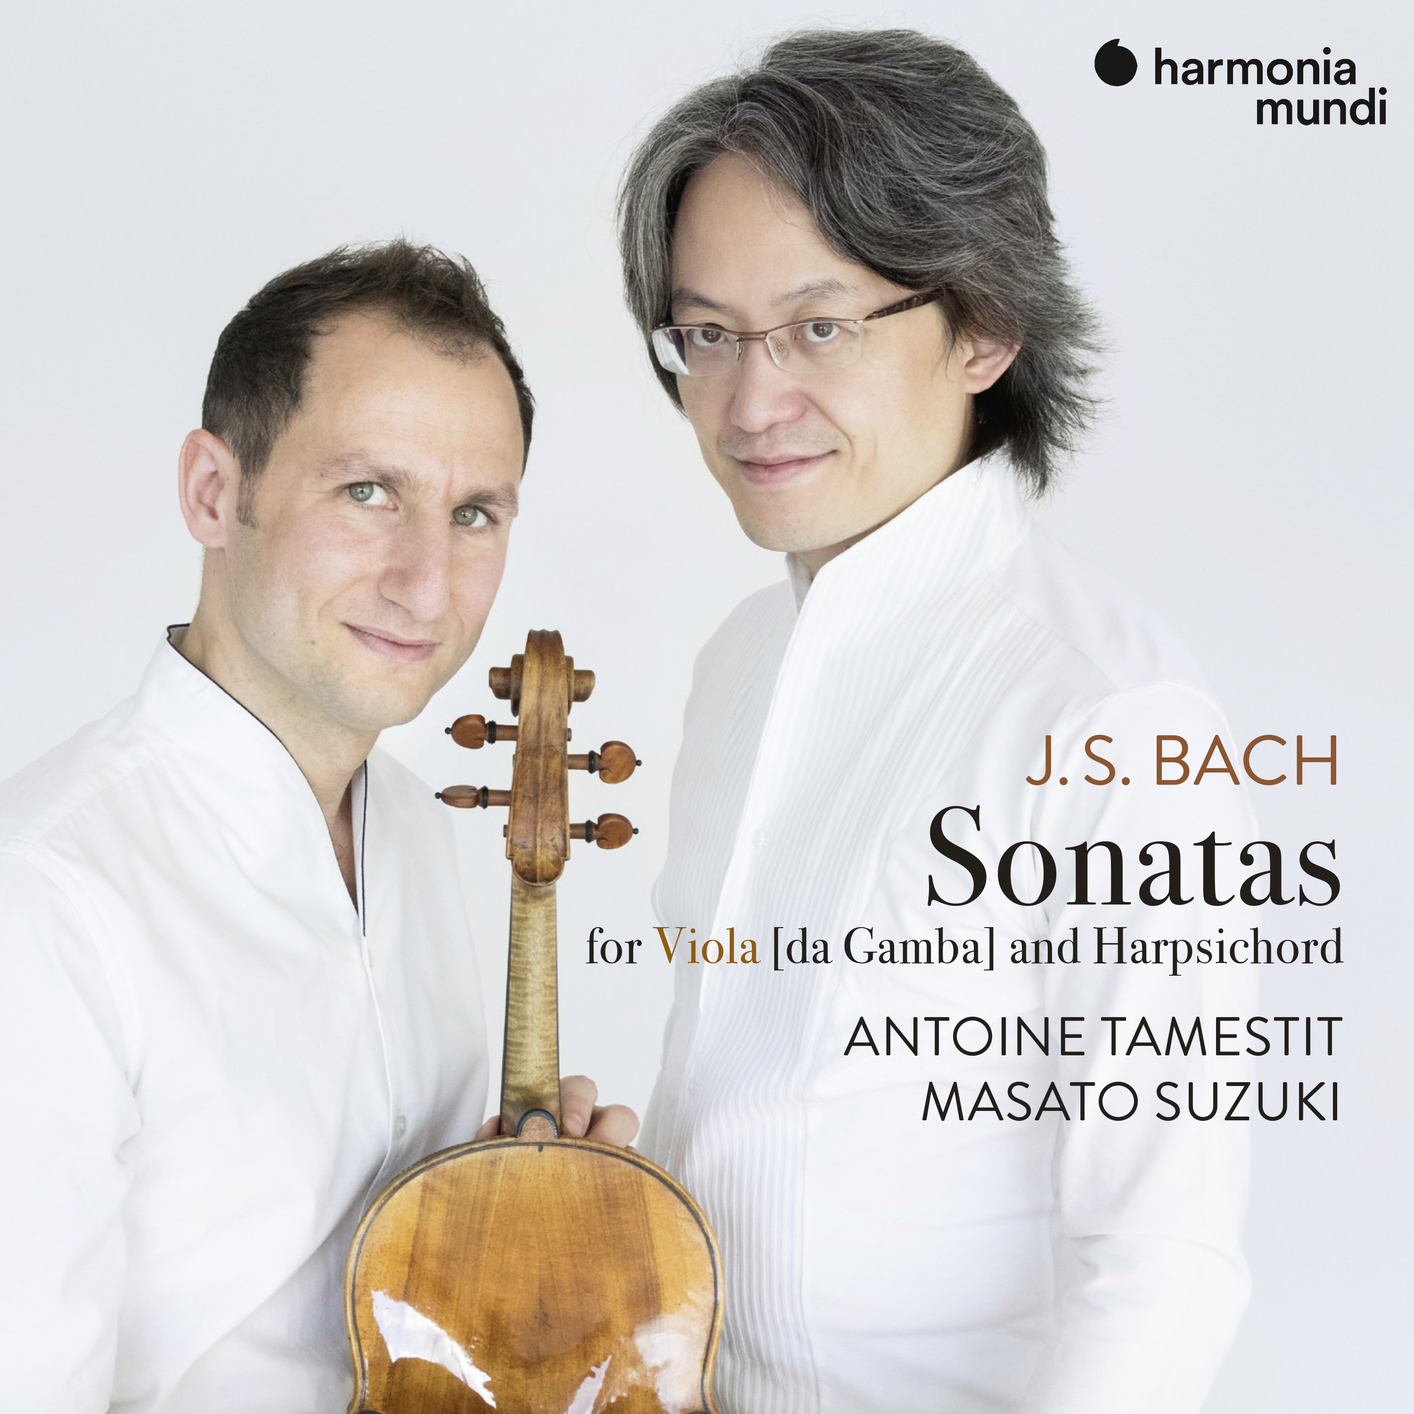 Antoine Tamestit & Masato Suzuki - J.S. Bach: 3 Sonatas for Viola da Gamba and Harpsichord, BWV 1027-1029 (2019) [FLAC 24bit/96kHz]